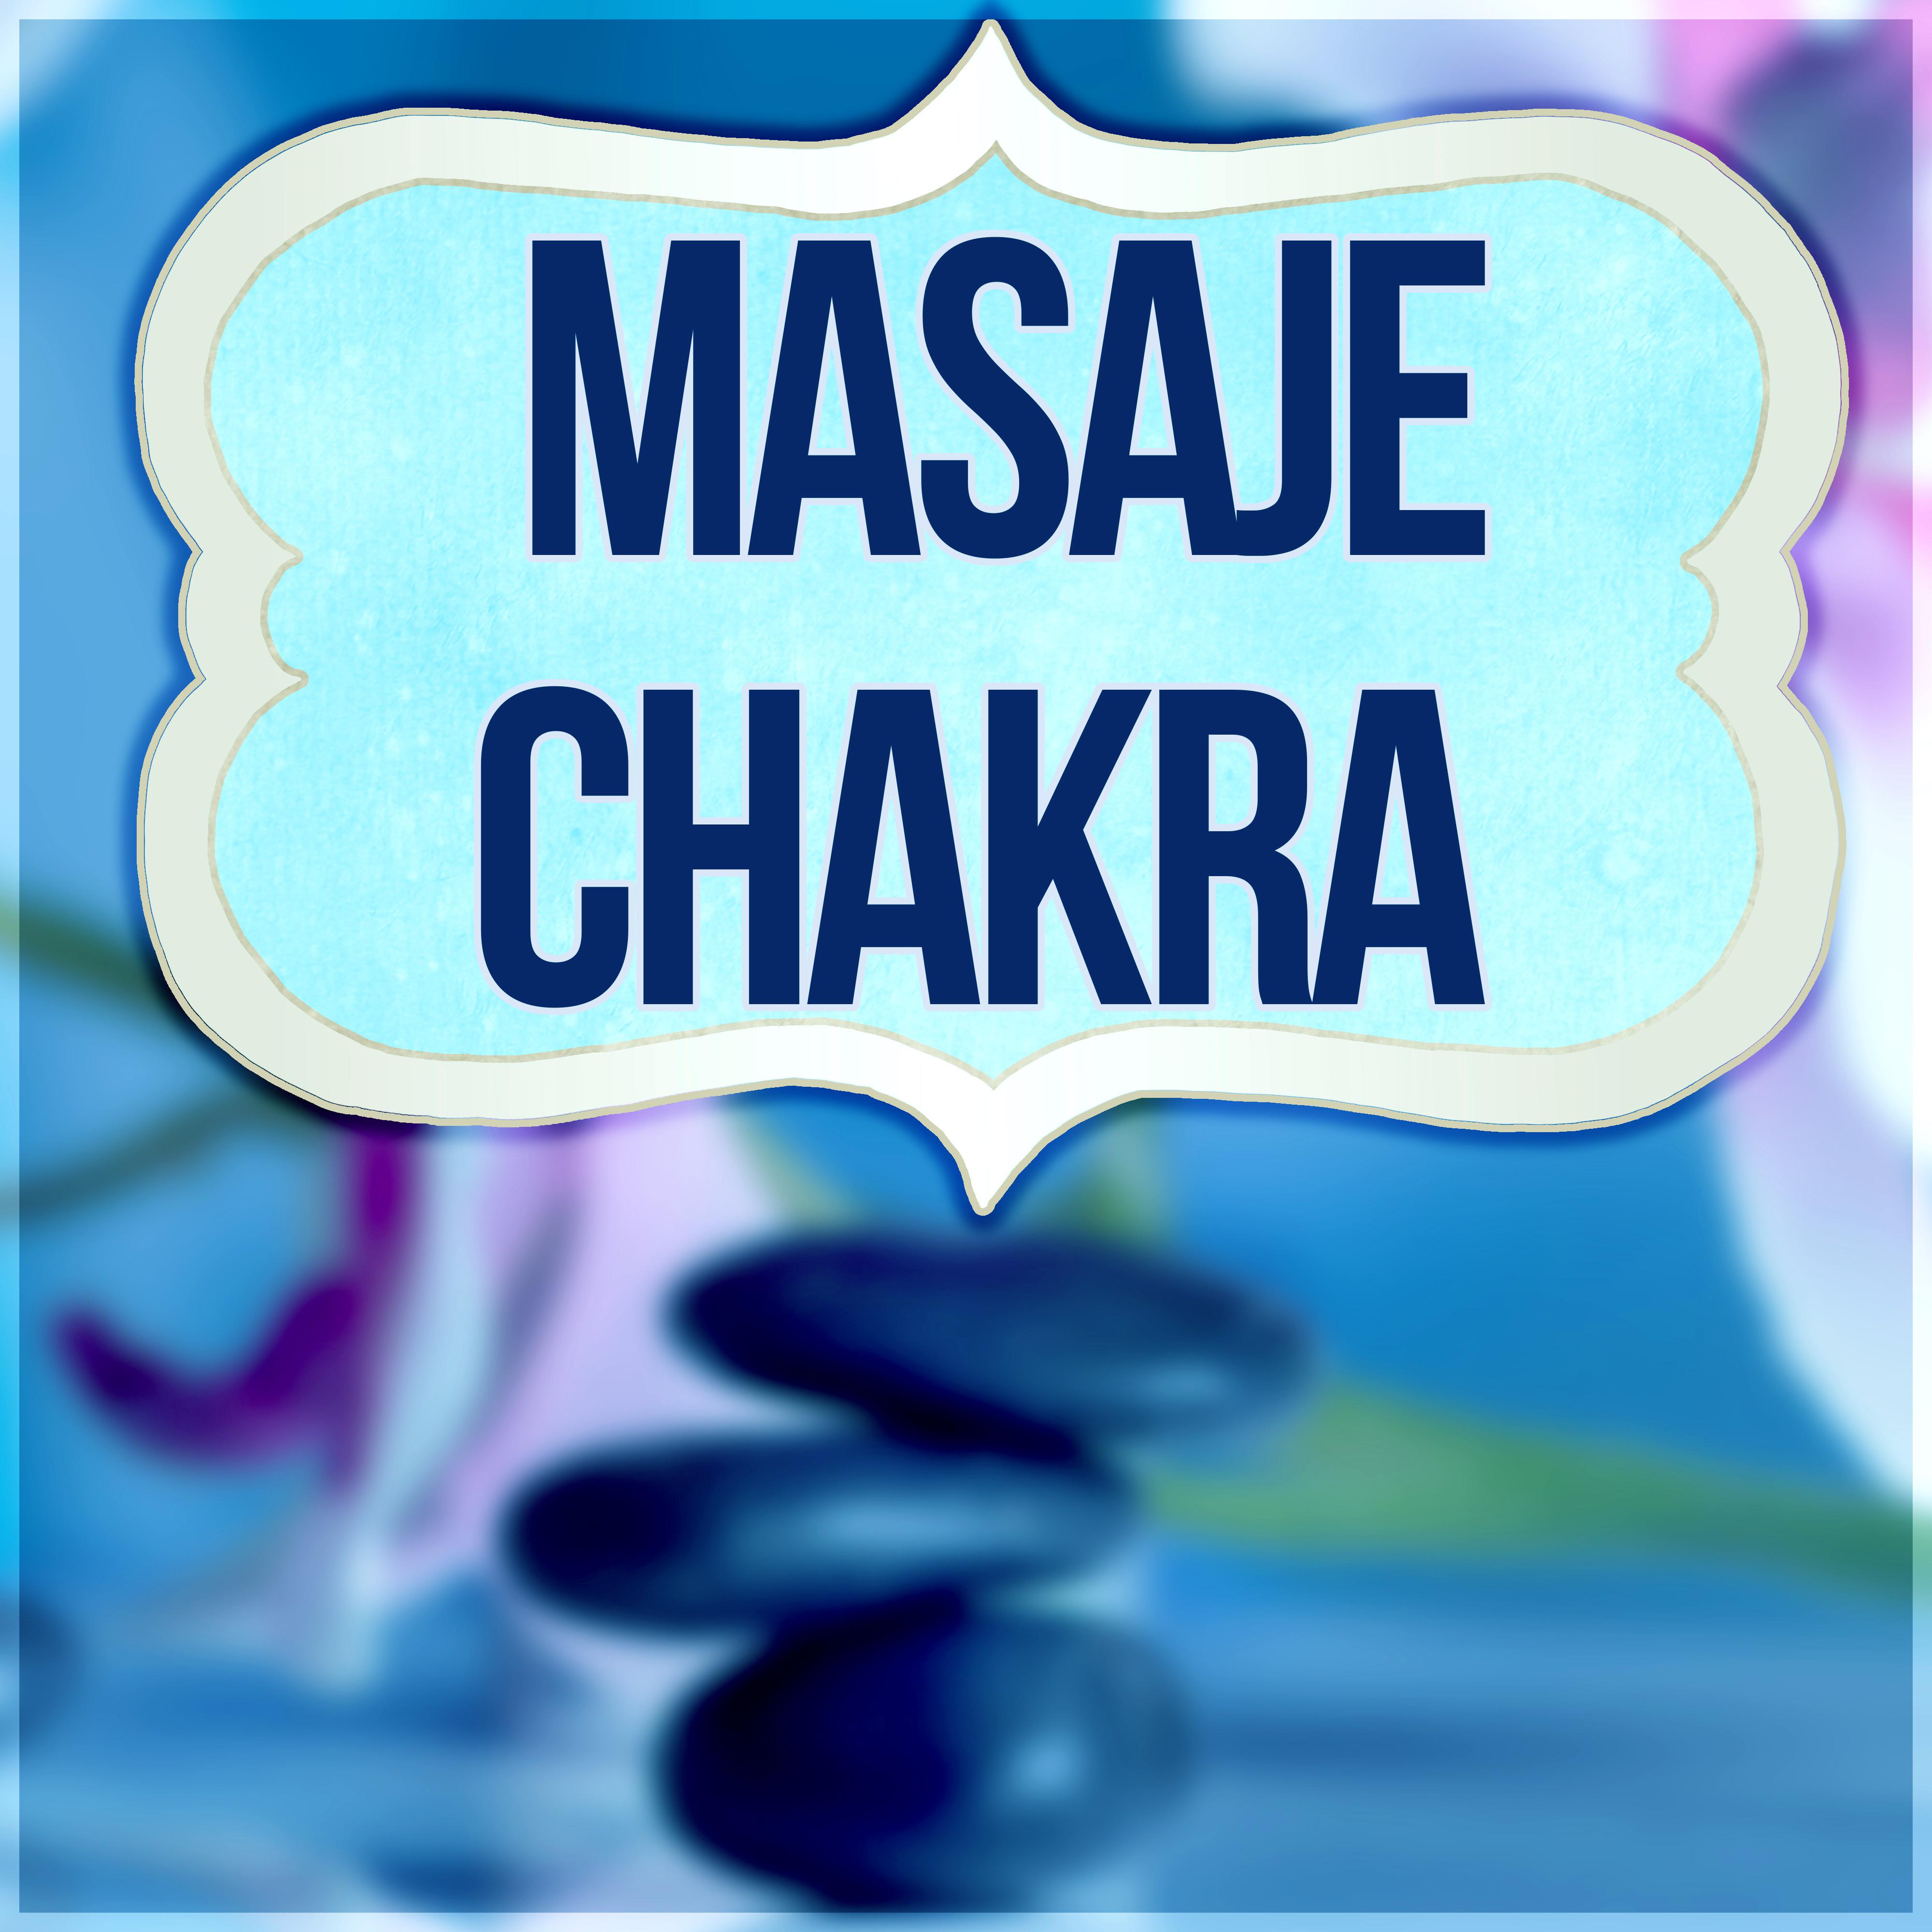 Masaje Chakra - Musica Relajante, Masaje, Musica Reiki, Relajacion, Sonidos de la Naturaleza